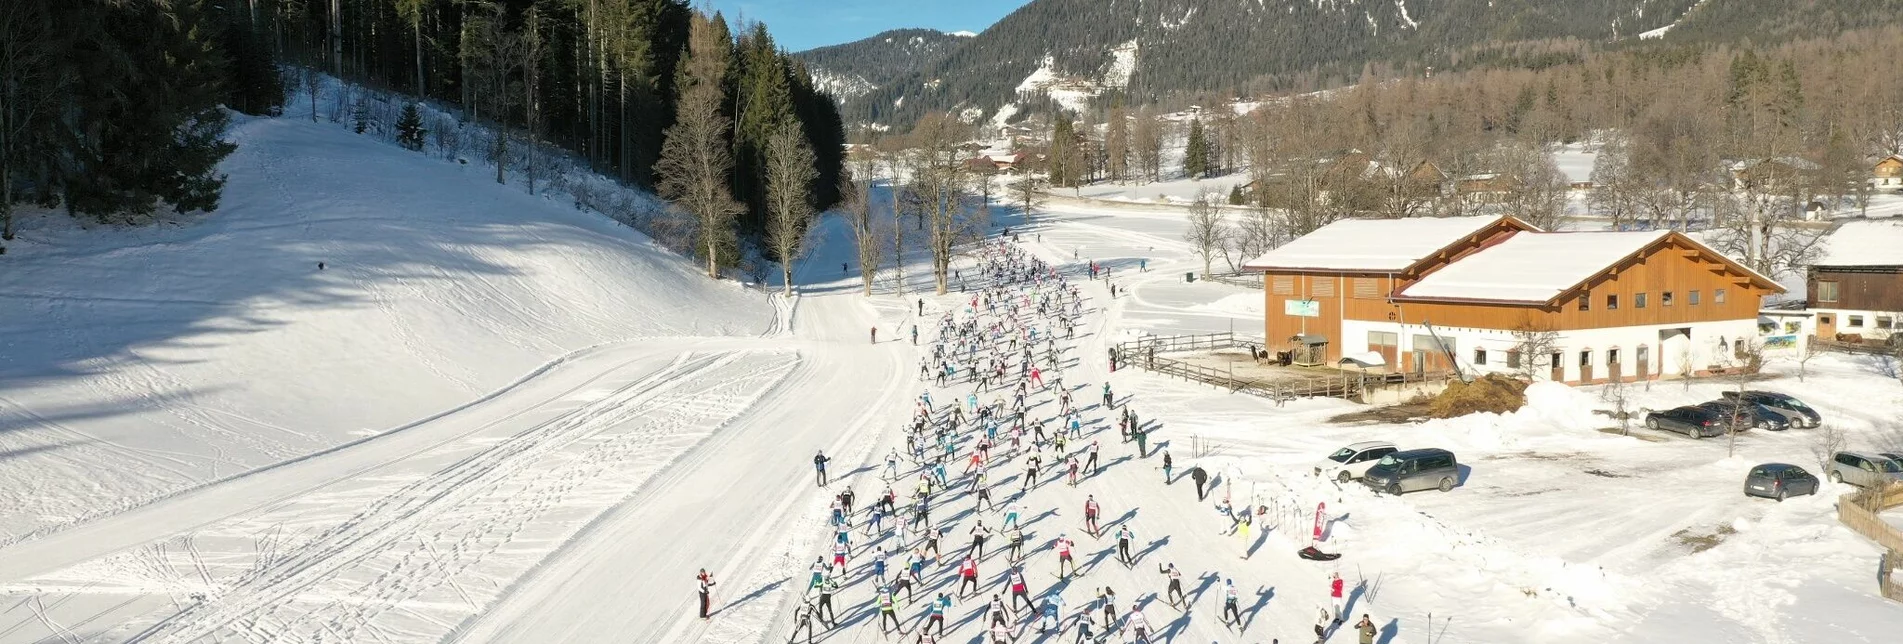 Cross-Country Skiing Dachsteinlauf 42 km Classic & Skating - Touren-Impression #1 | © Erlebnisregion Schladming-Dachstein